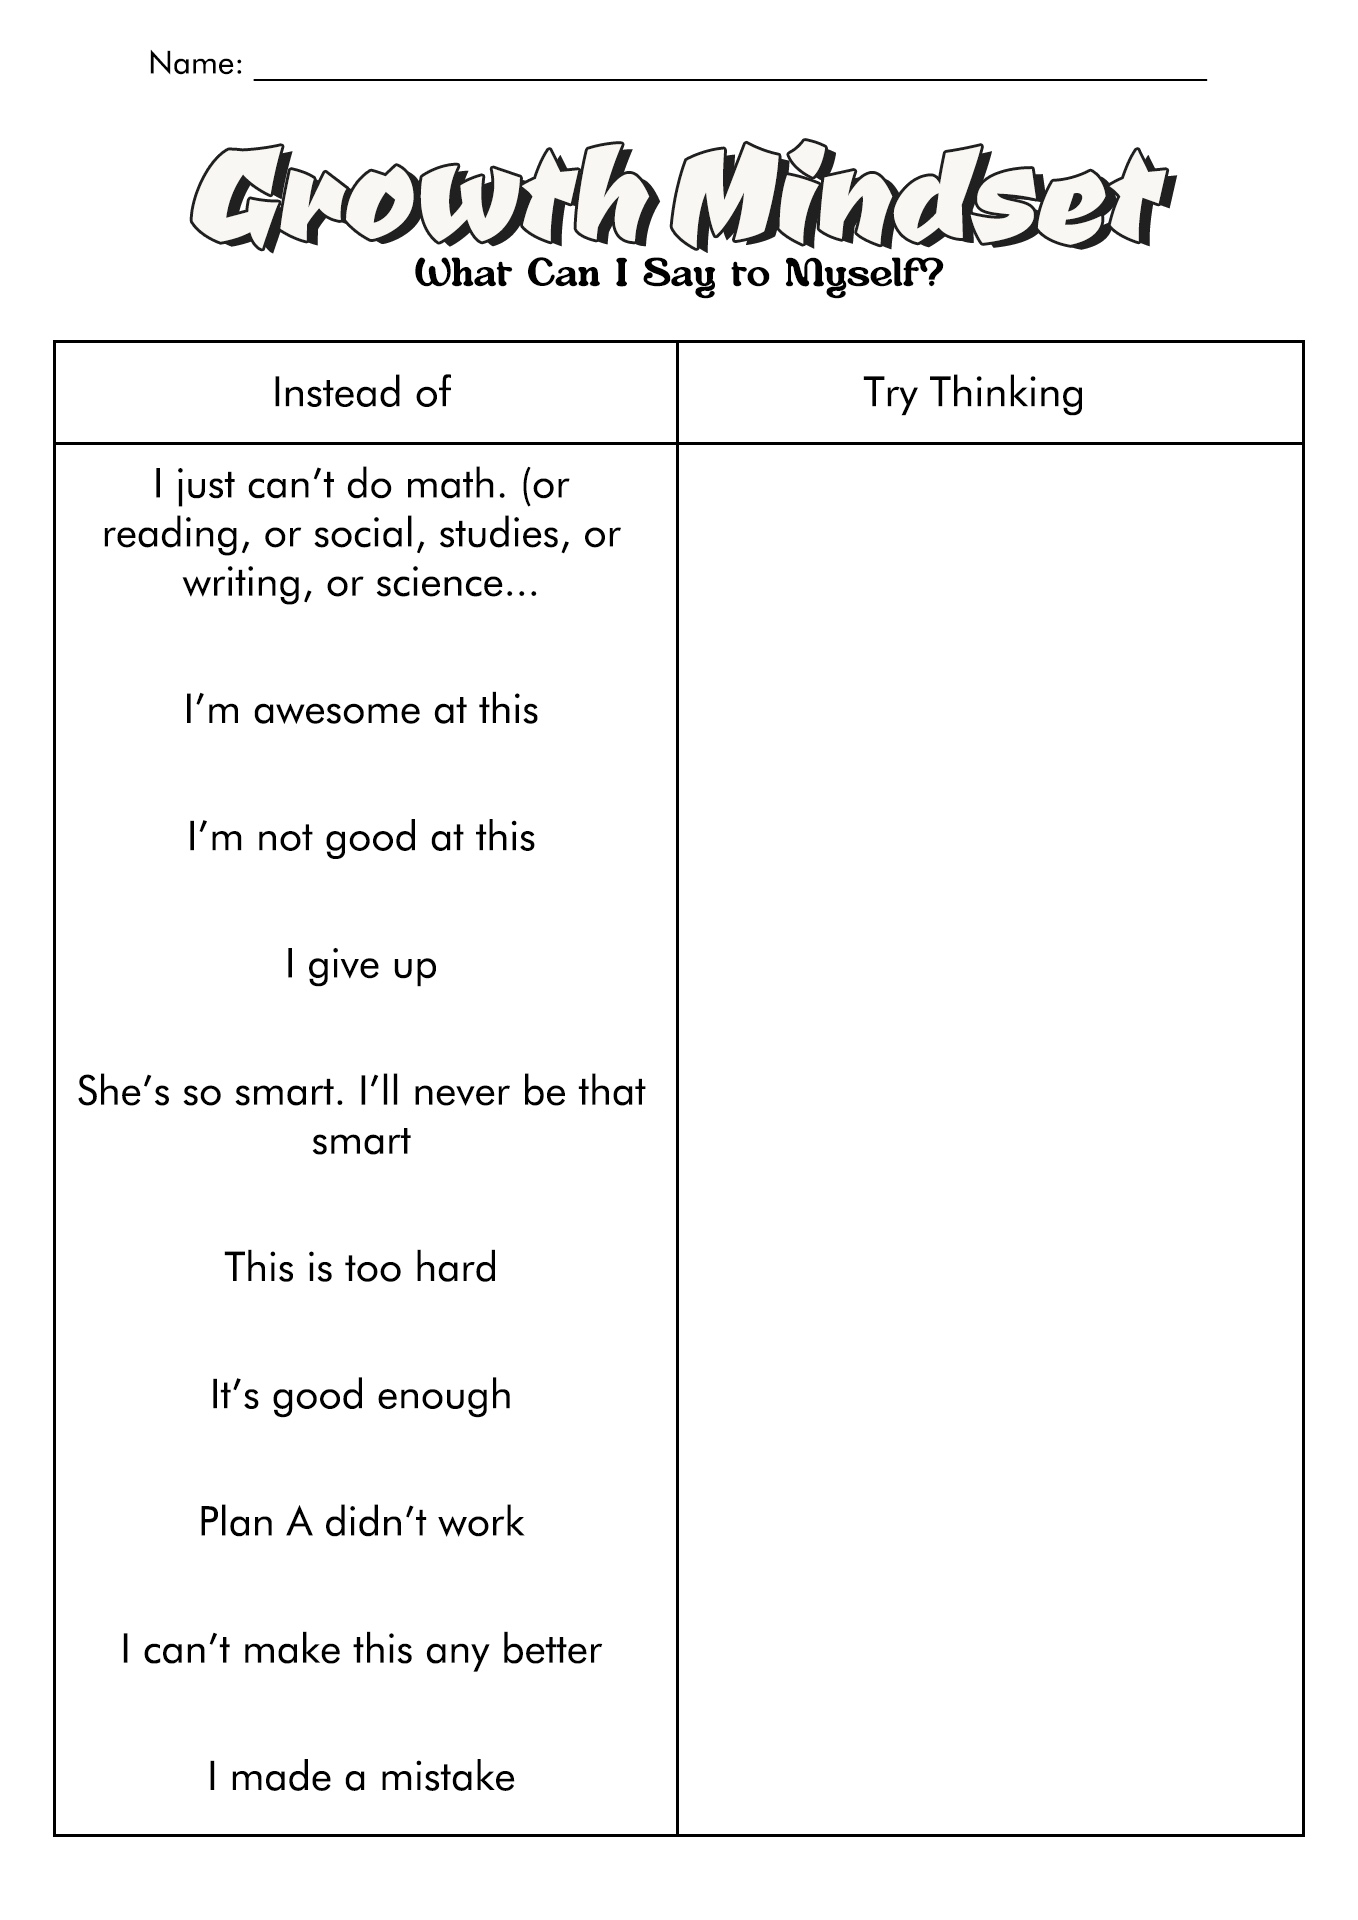 Self-Esteem Worksheets Printable Free